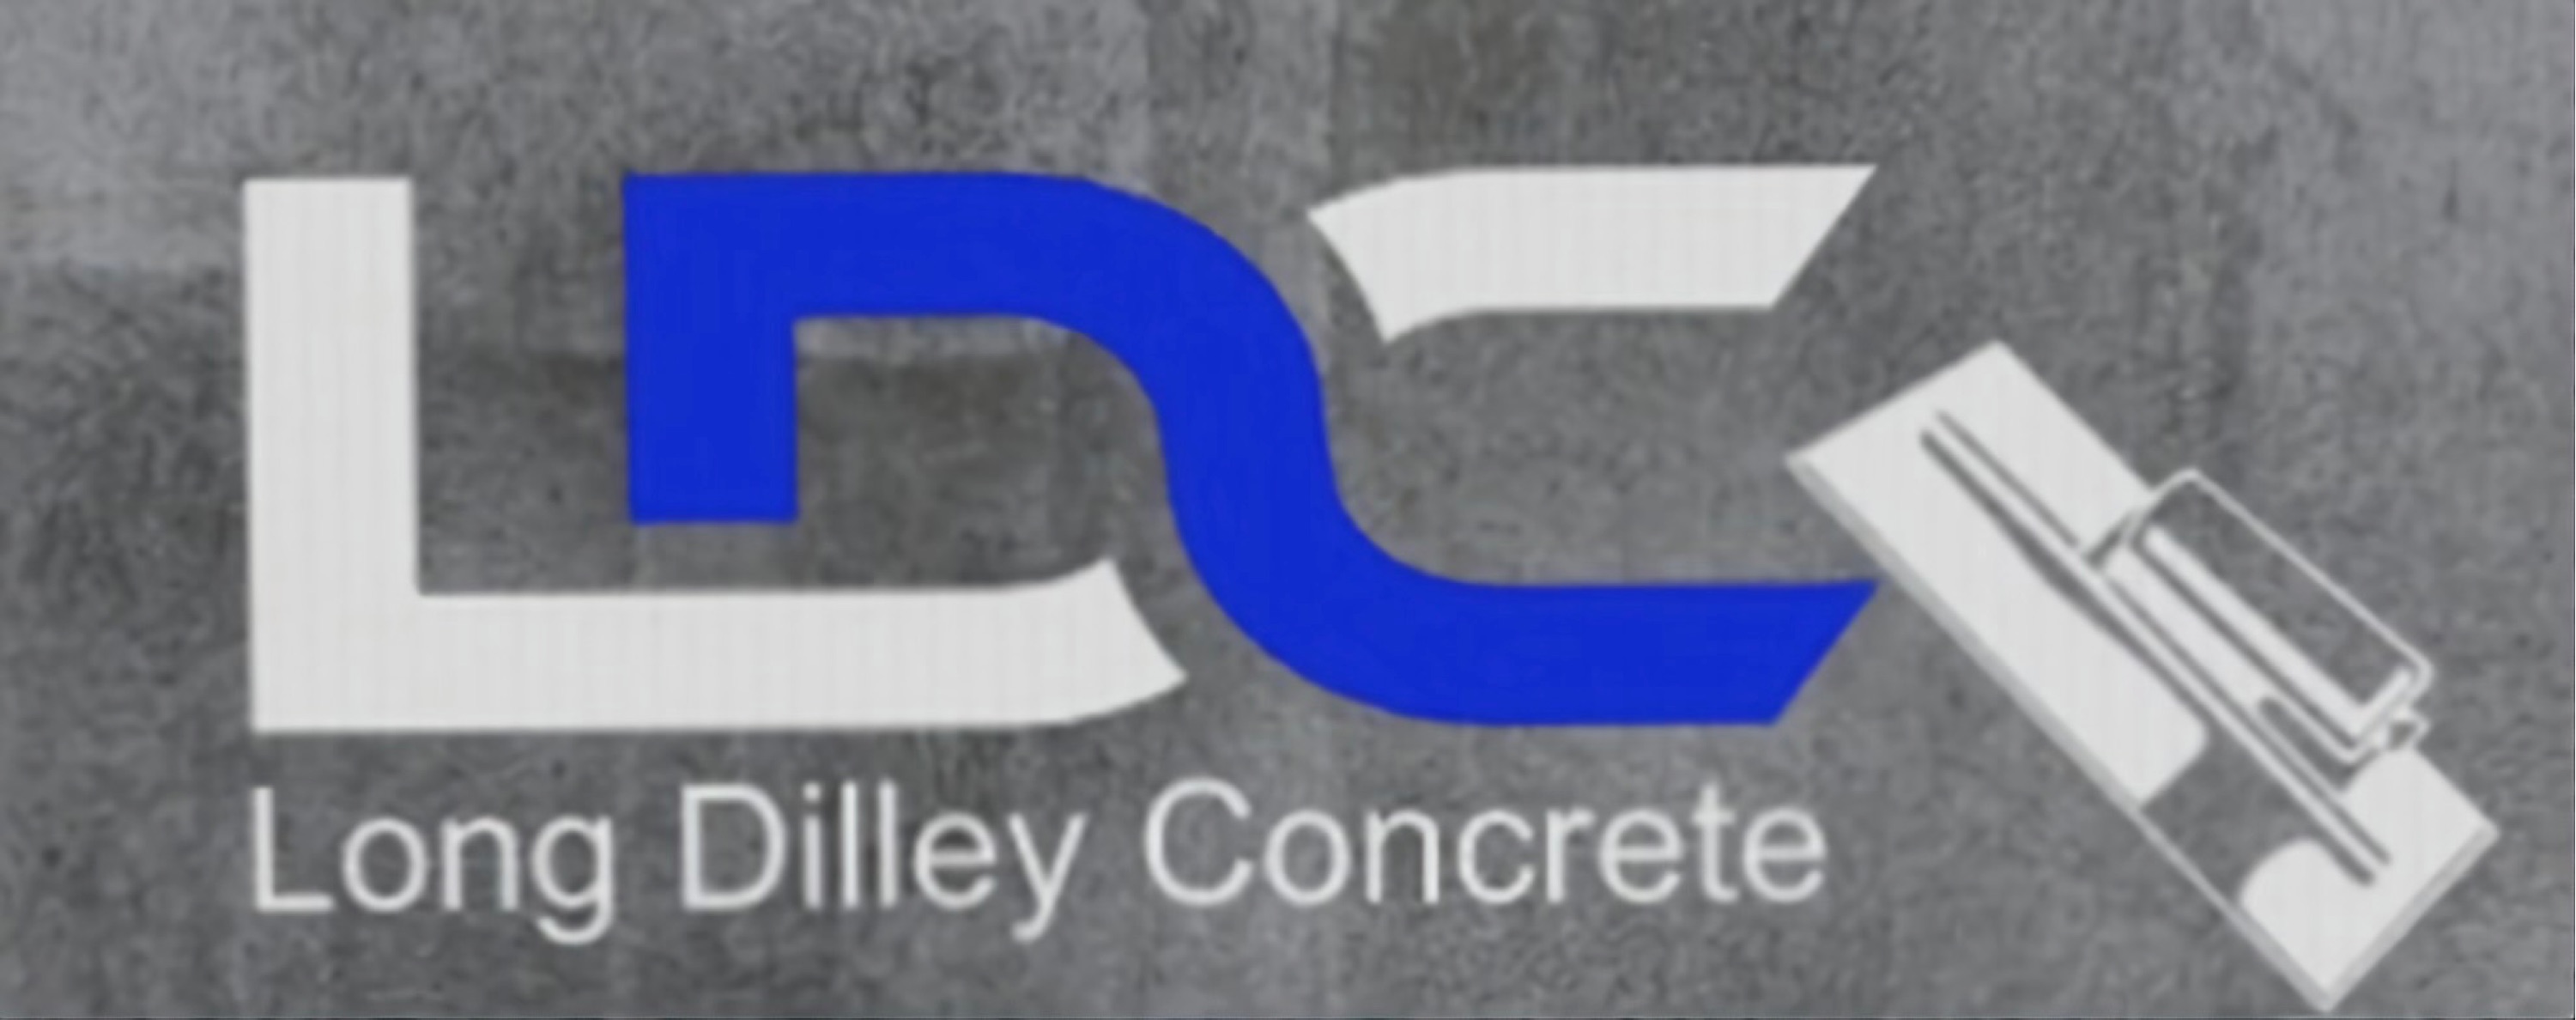 Long Dilley Concrete Logo